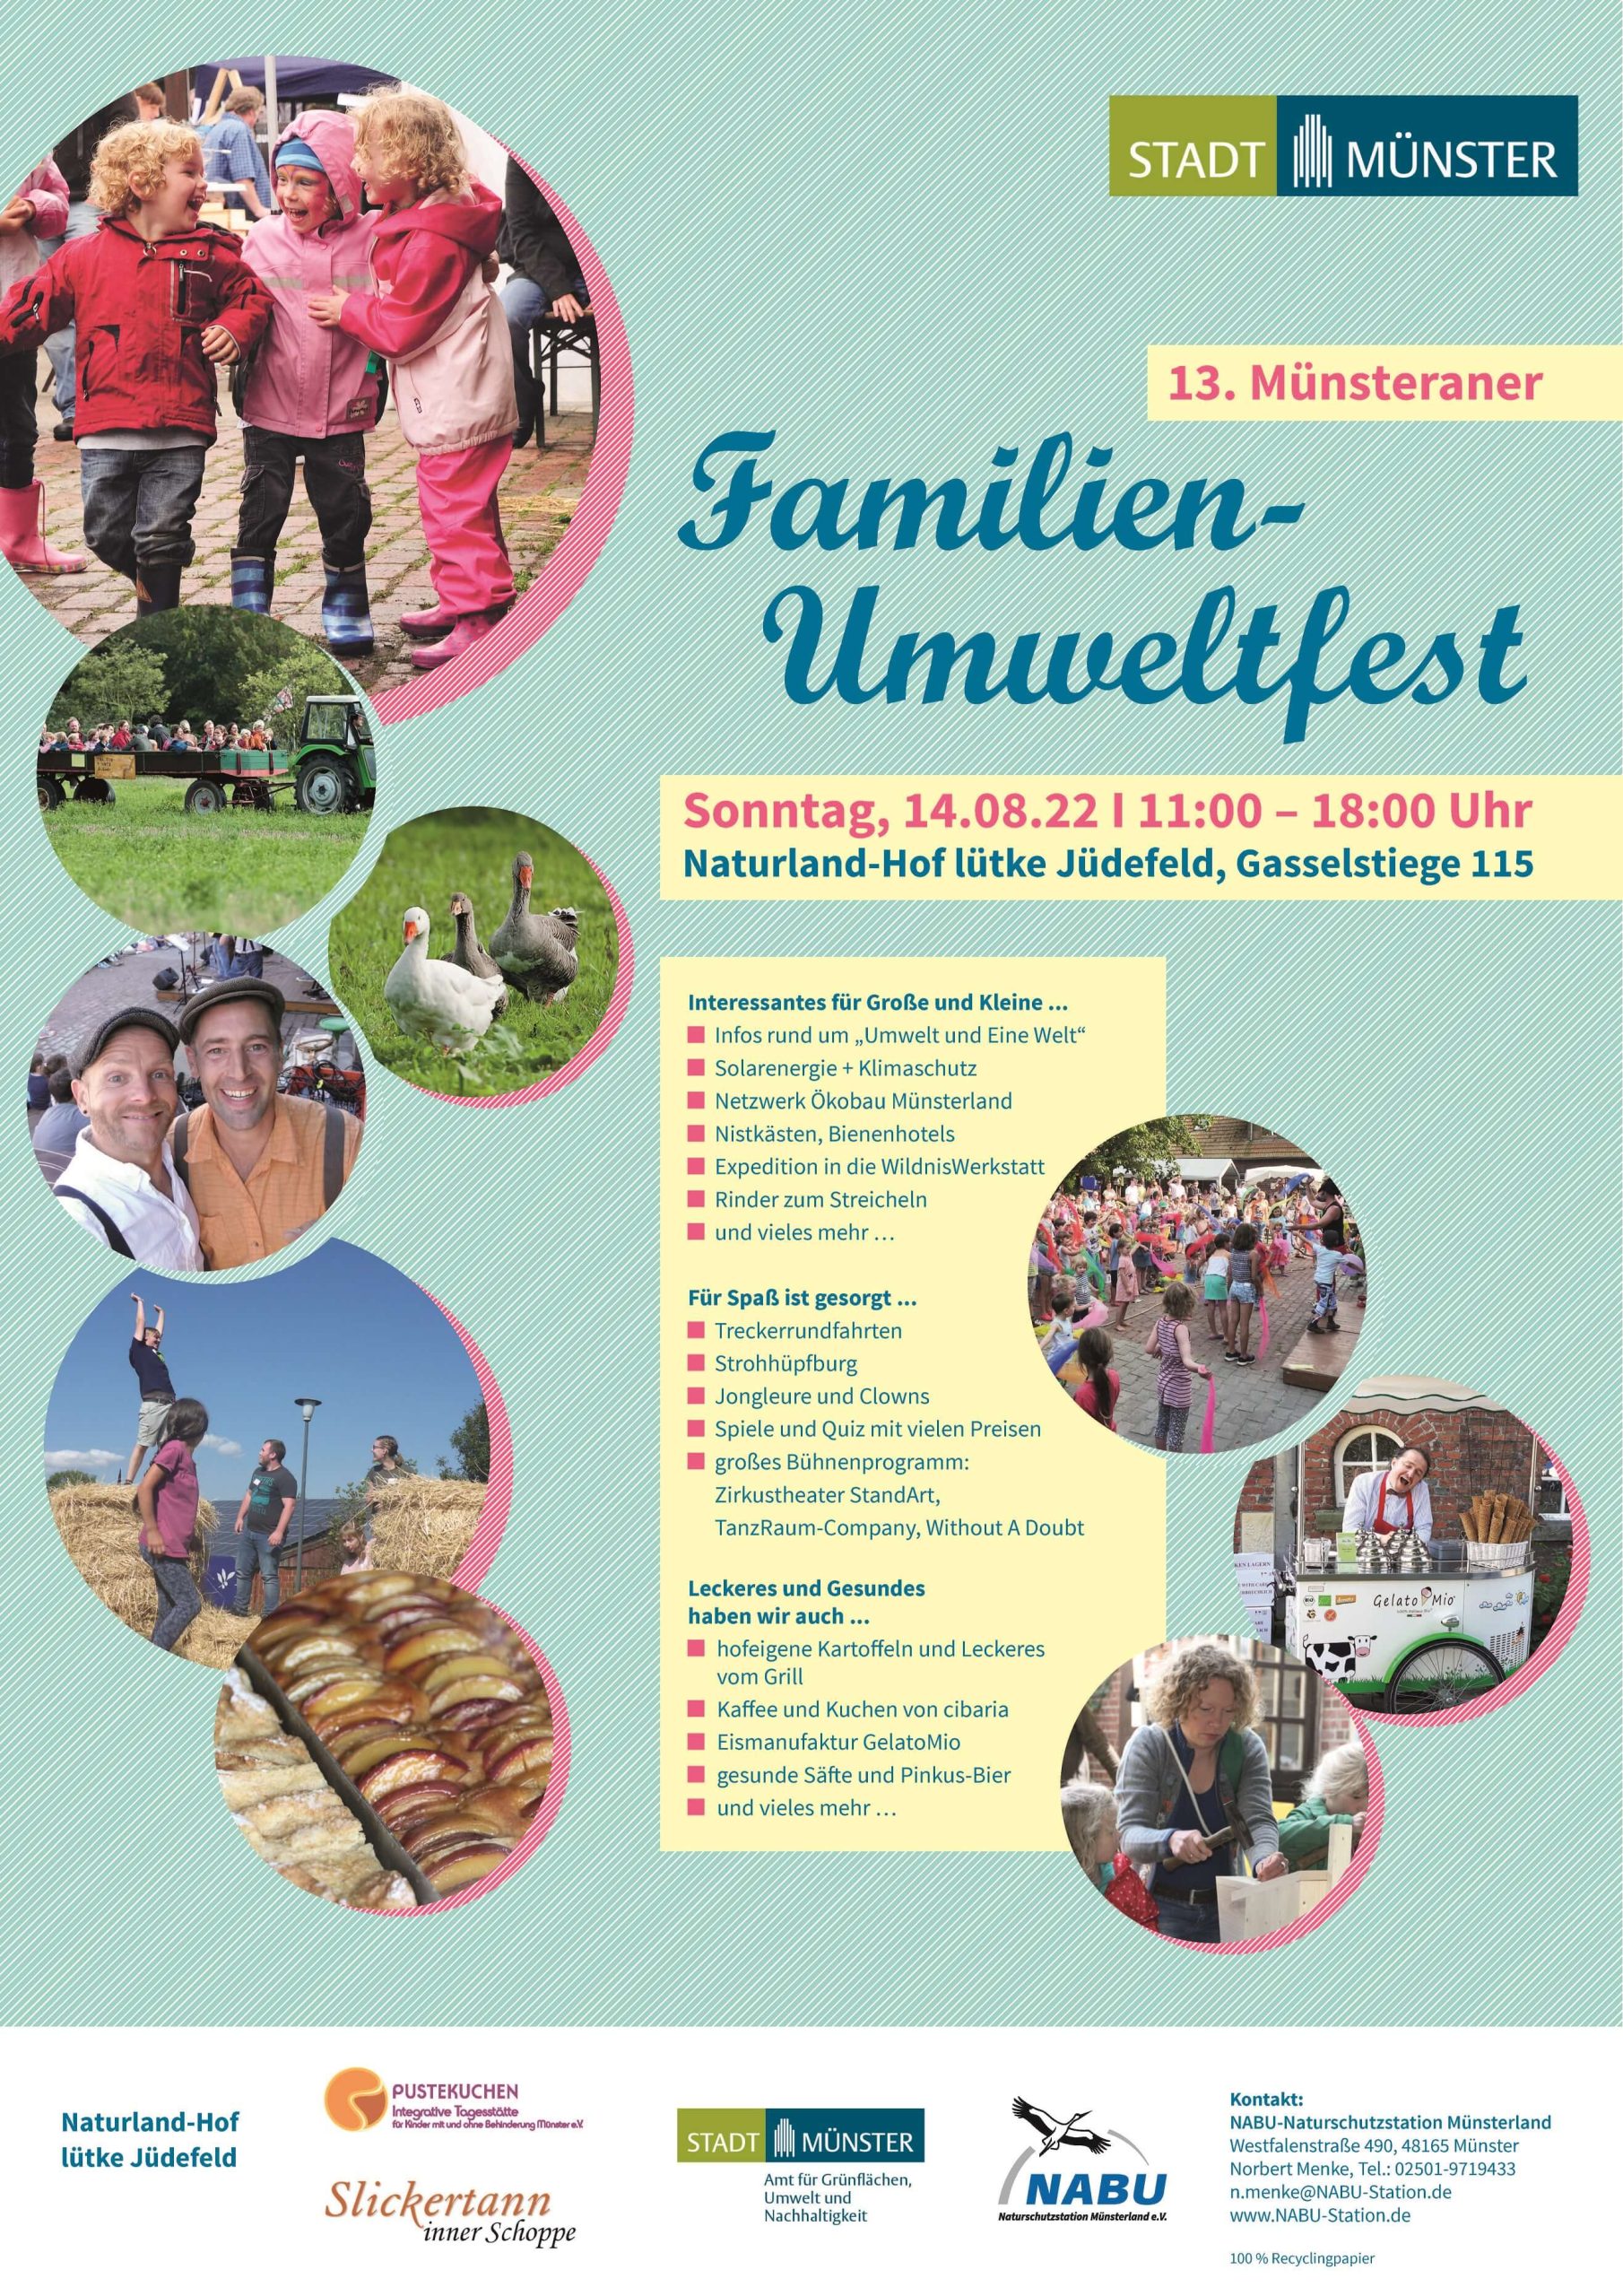 Ein Plakat mit Infomationen über das Familien-Umweltfest.